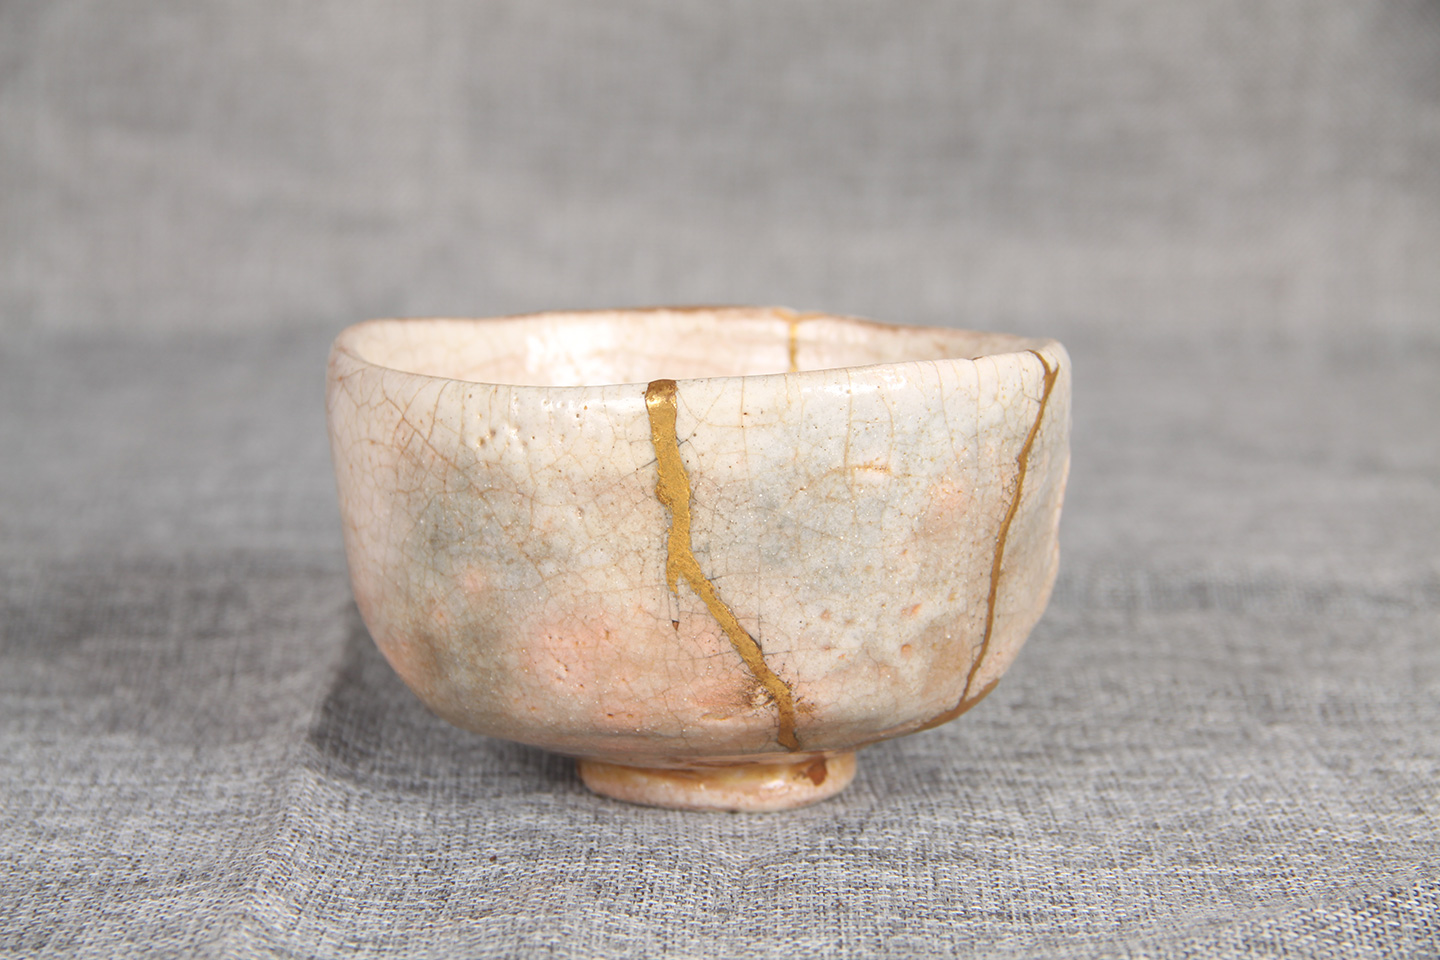 日本茶碗专业陶瓷老茶碗金善工艺顶级艺术年份长-日本抹茶碗-日本茶道